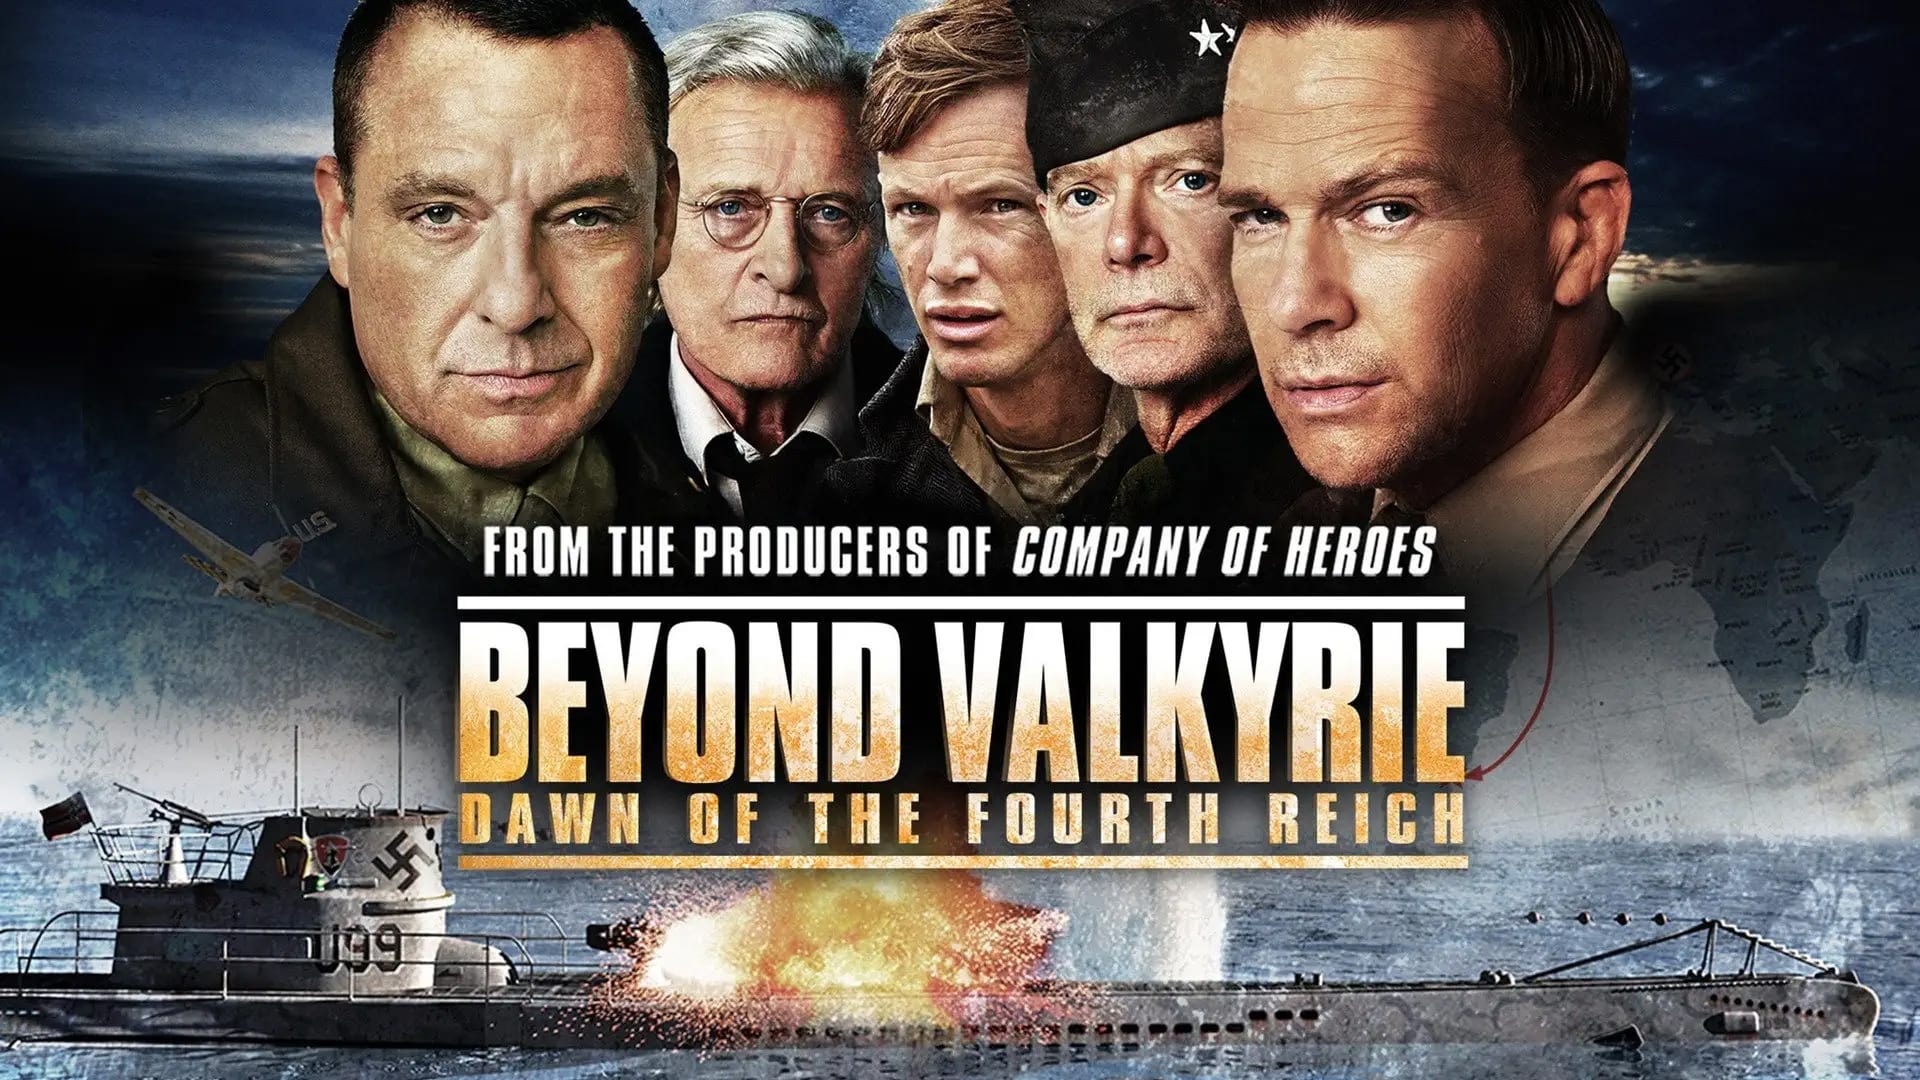 Beyond Valkyrie Dawn of the Fourth Reich (2016) ปฏิบัติการฝ่าสมรภูมิอินทรีเหล็ก 